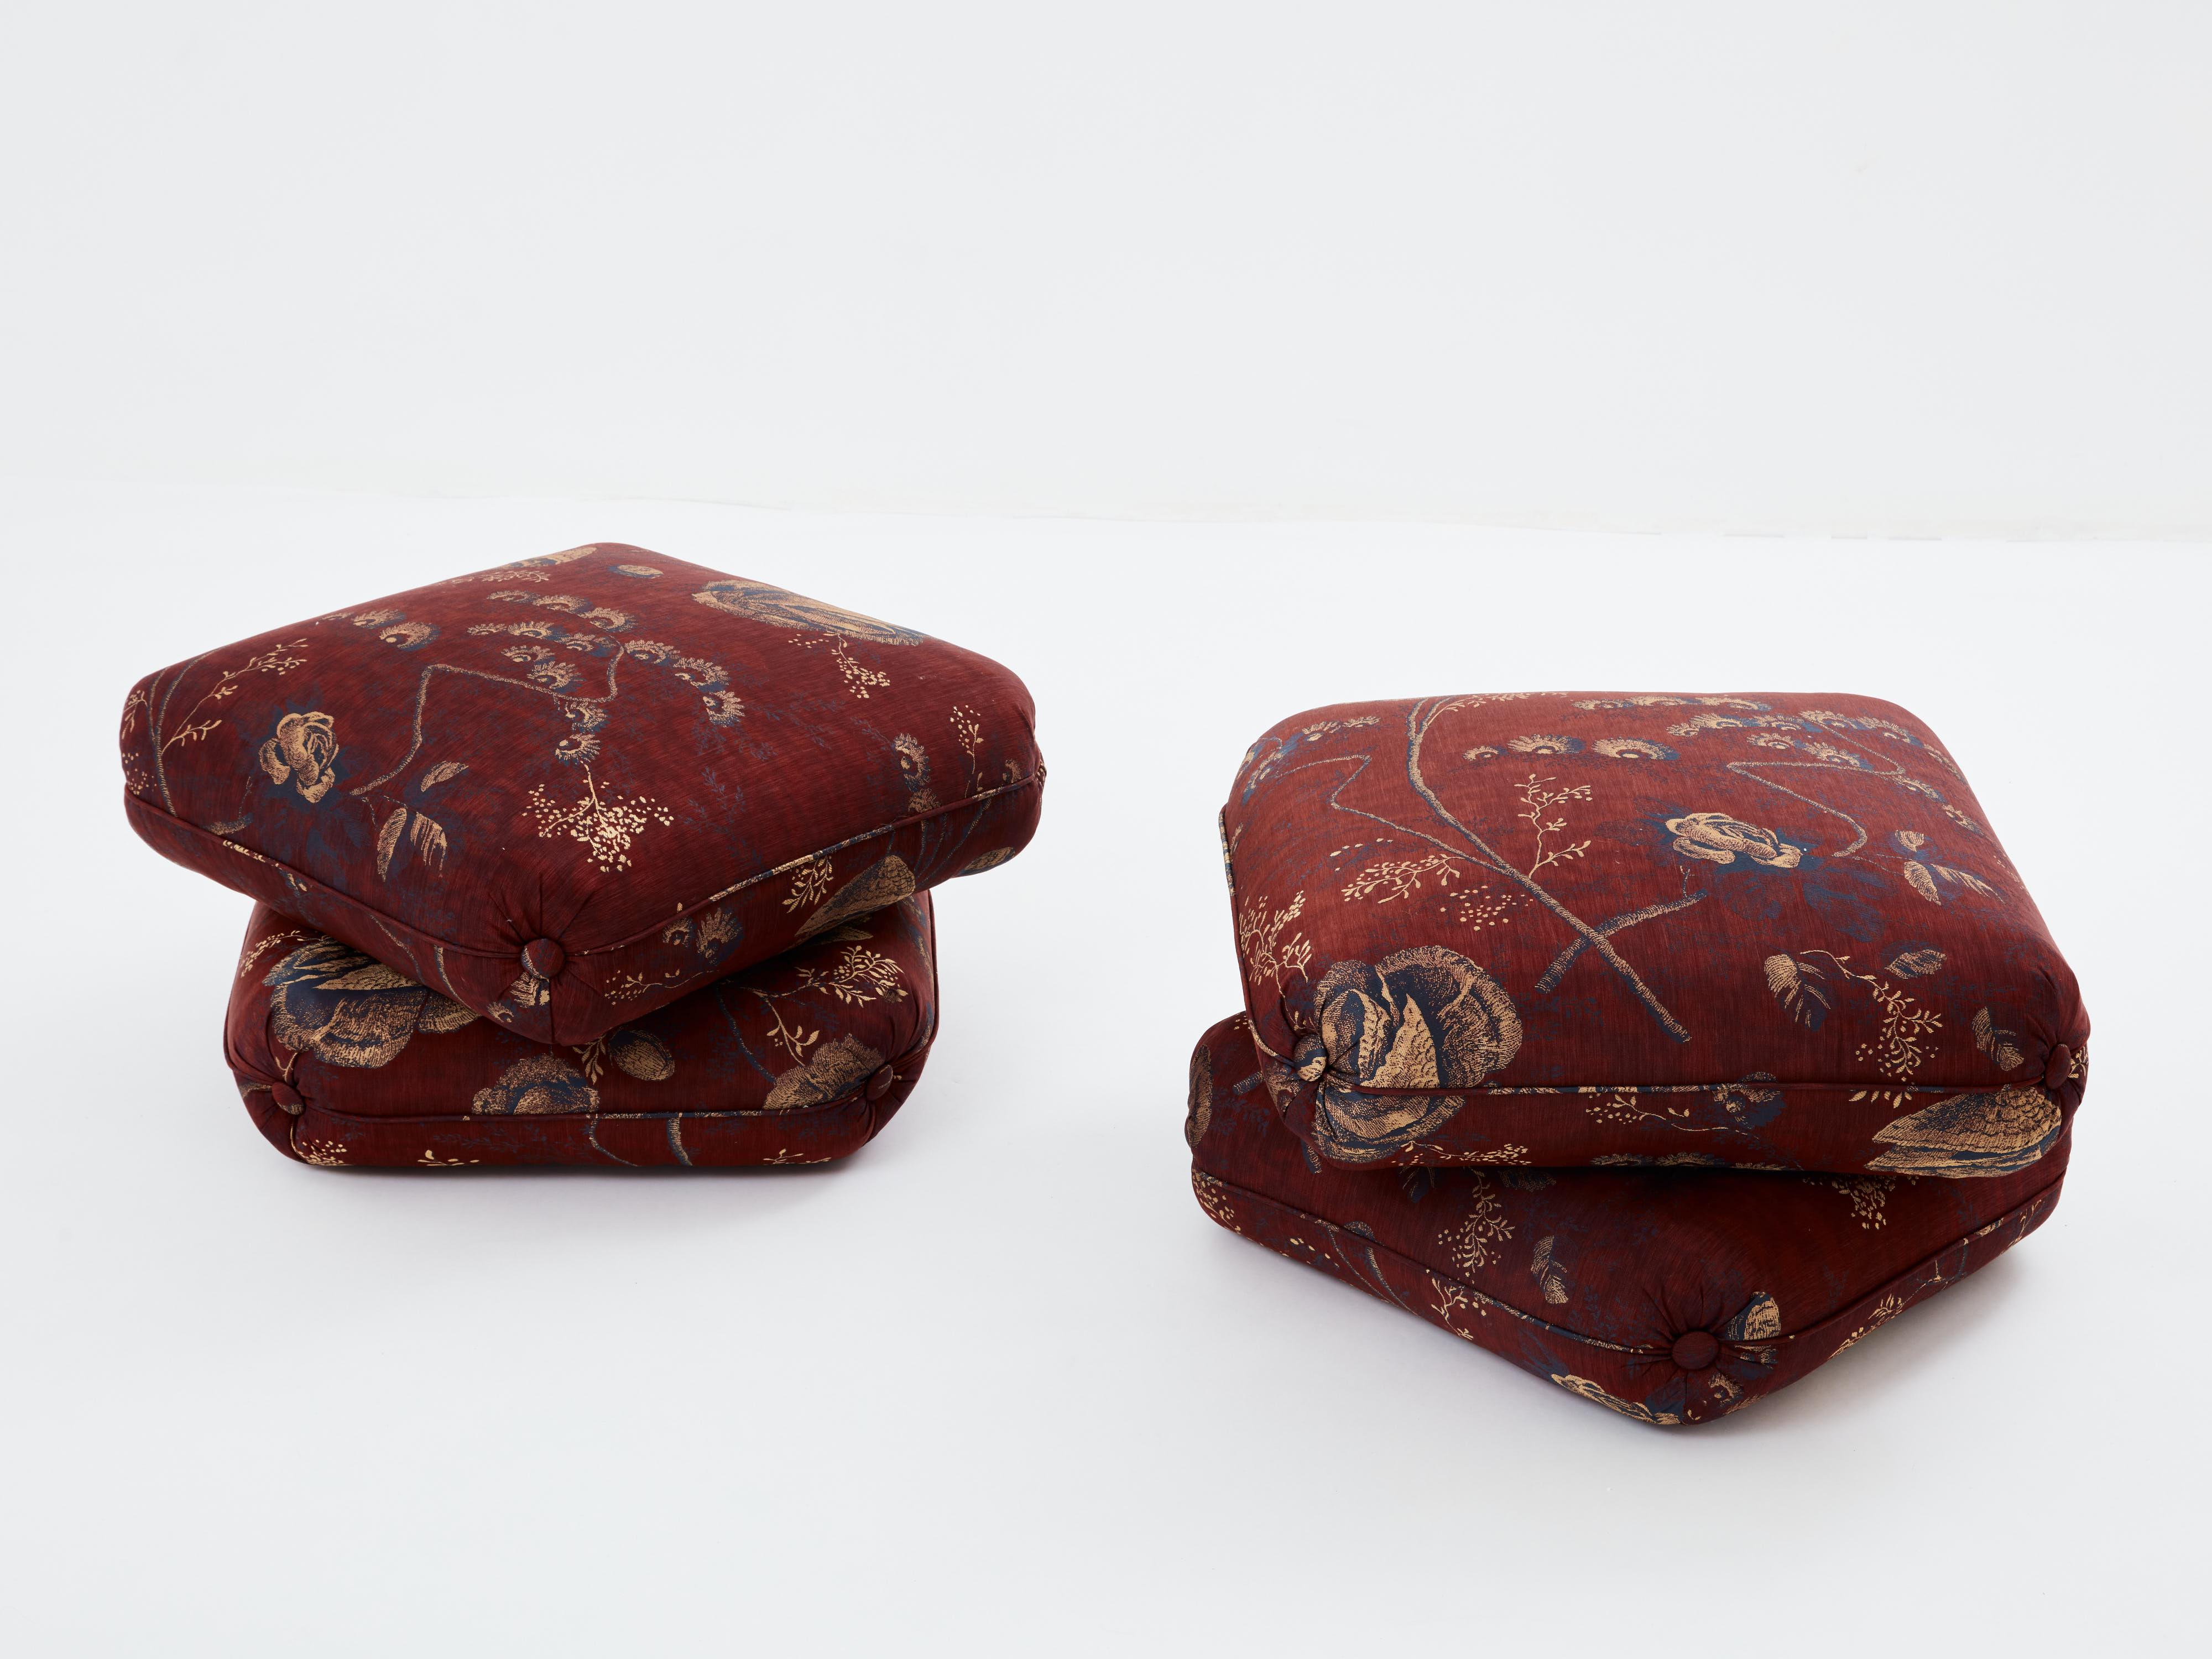 Belle paire de poufs ou tabourets du designer français Jacques Charpentier pour la Maison Jansen, conçus dans les années 1970. La paire de poufs est composée de deux grands coussins reliés entre eux. Elles ont été nouvellement tapissées d'un